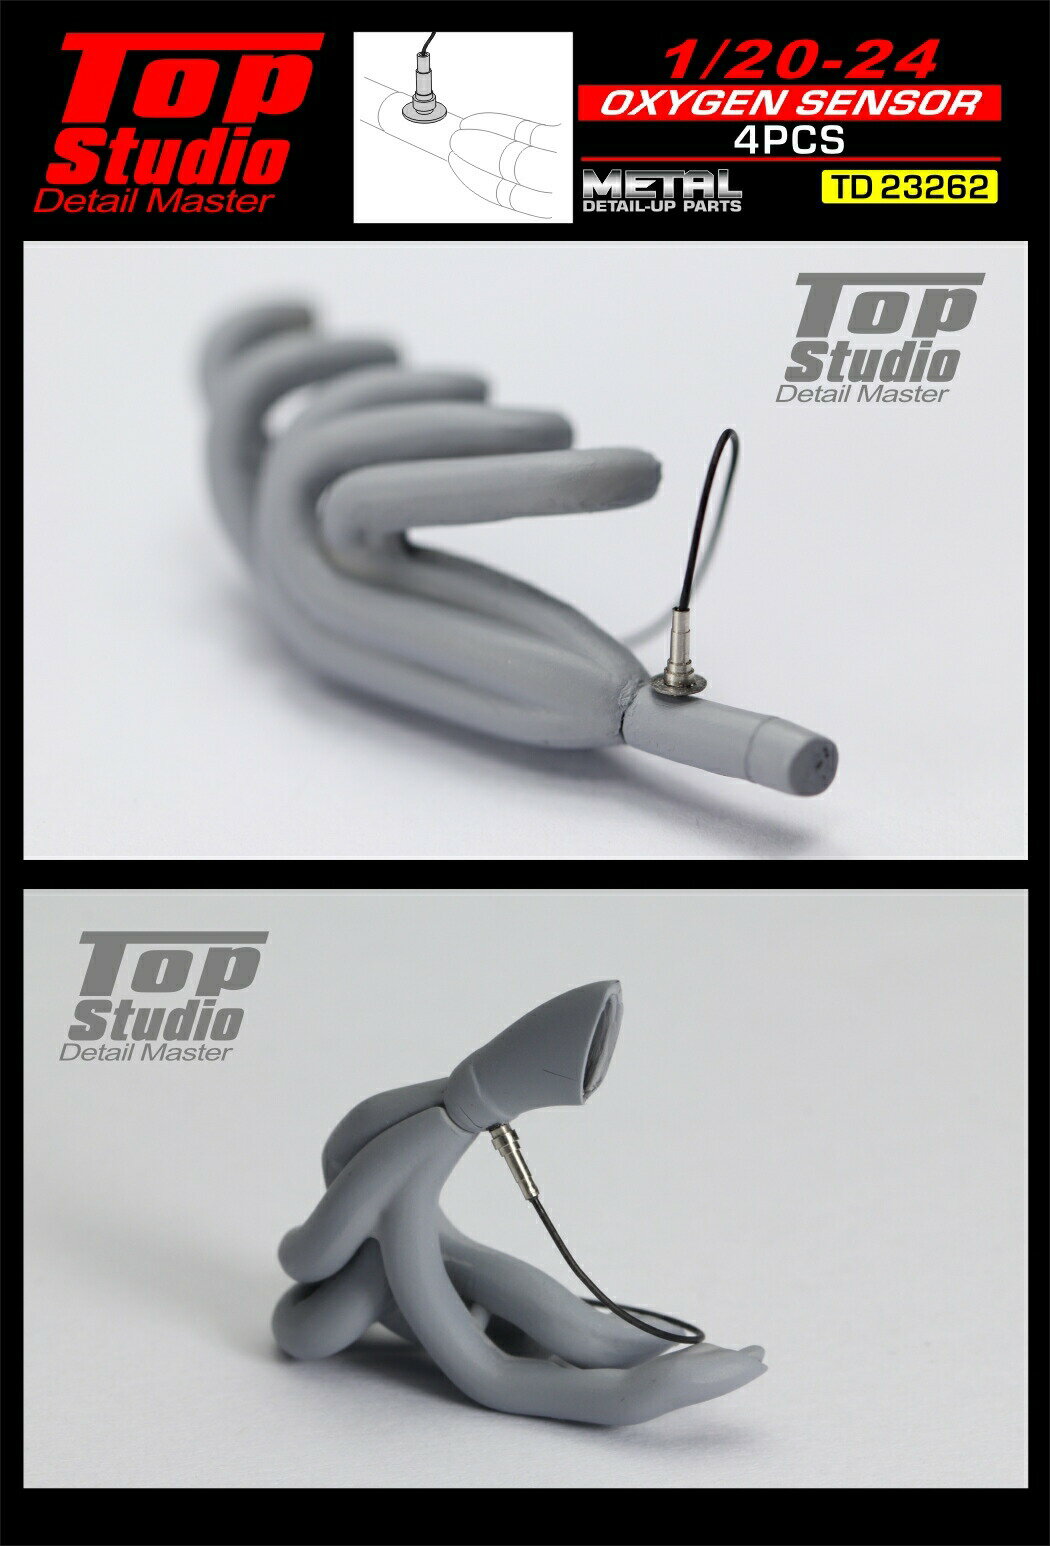 トップスタジオ TOP STUDIO 1/20 - 1/24 酸素センサー エキゾーストマニホールド マフラー用 コード付 4個入 エッチングパーツ 自動車模型 (td23262)